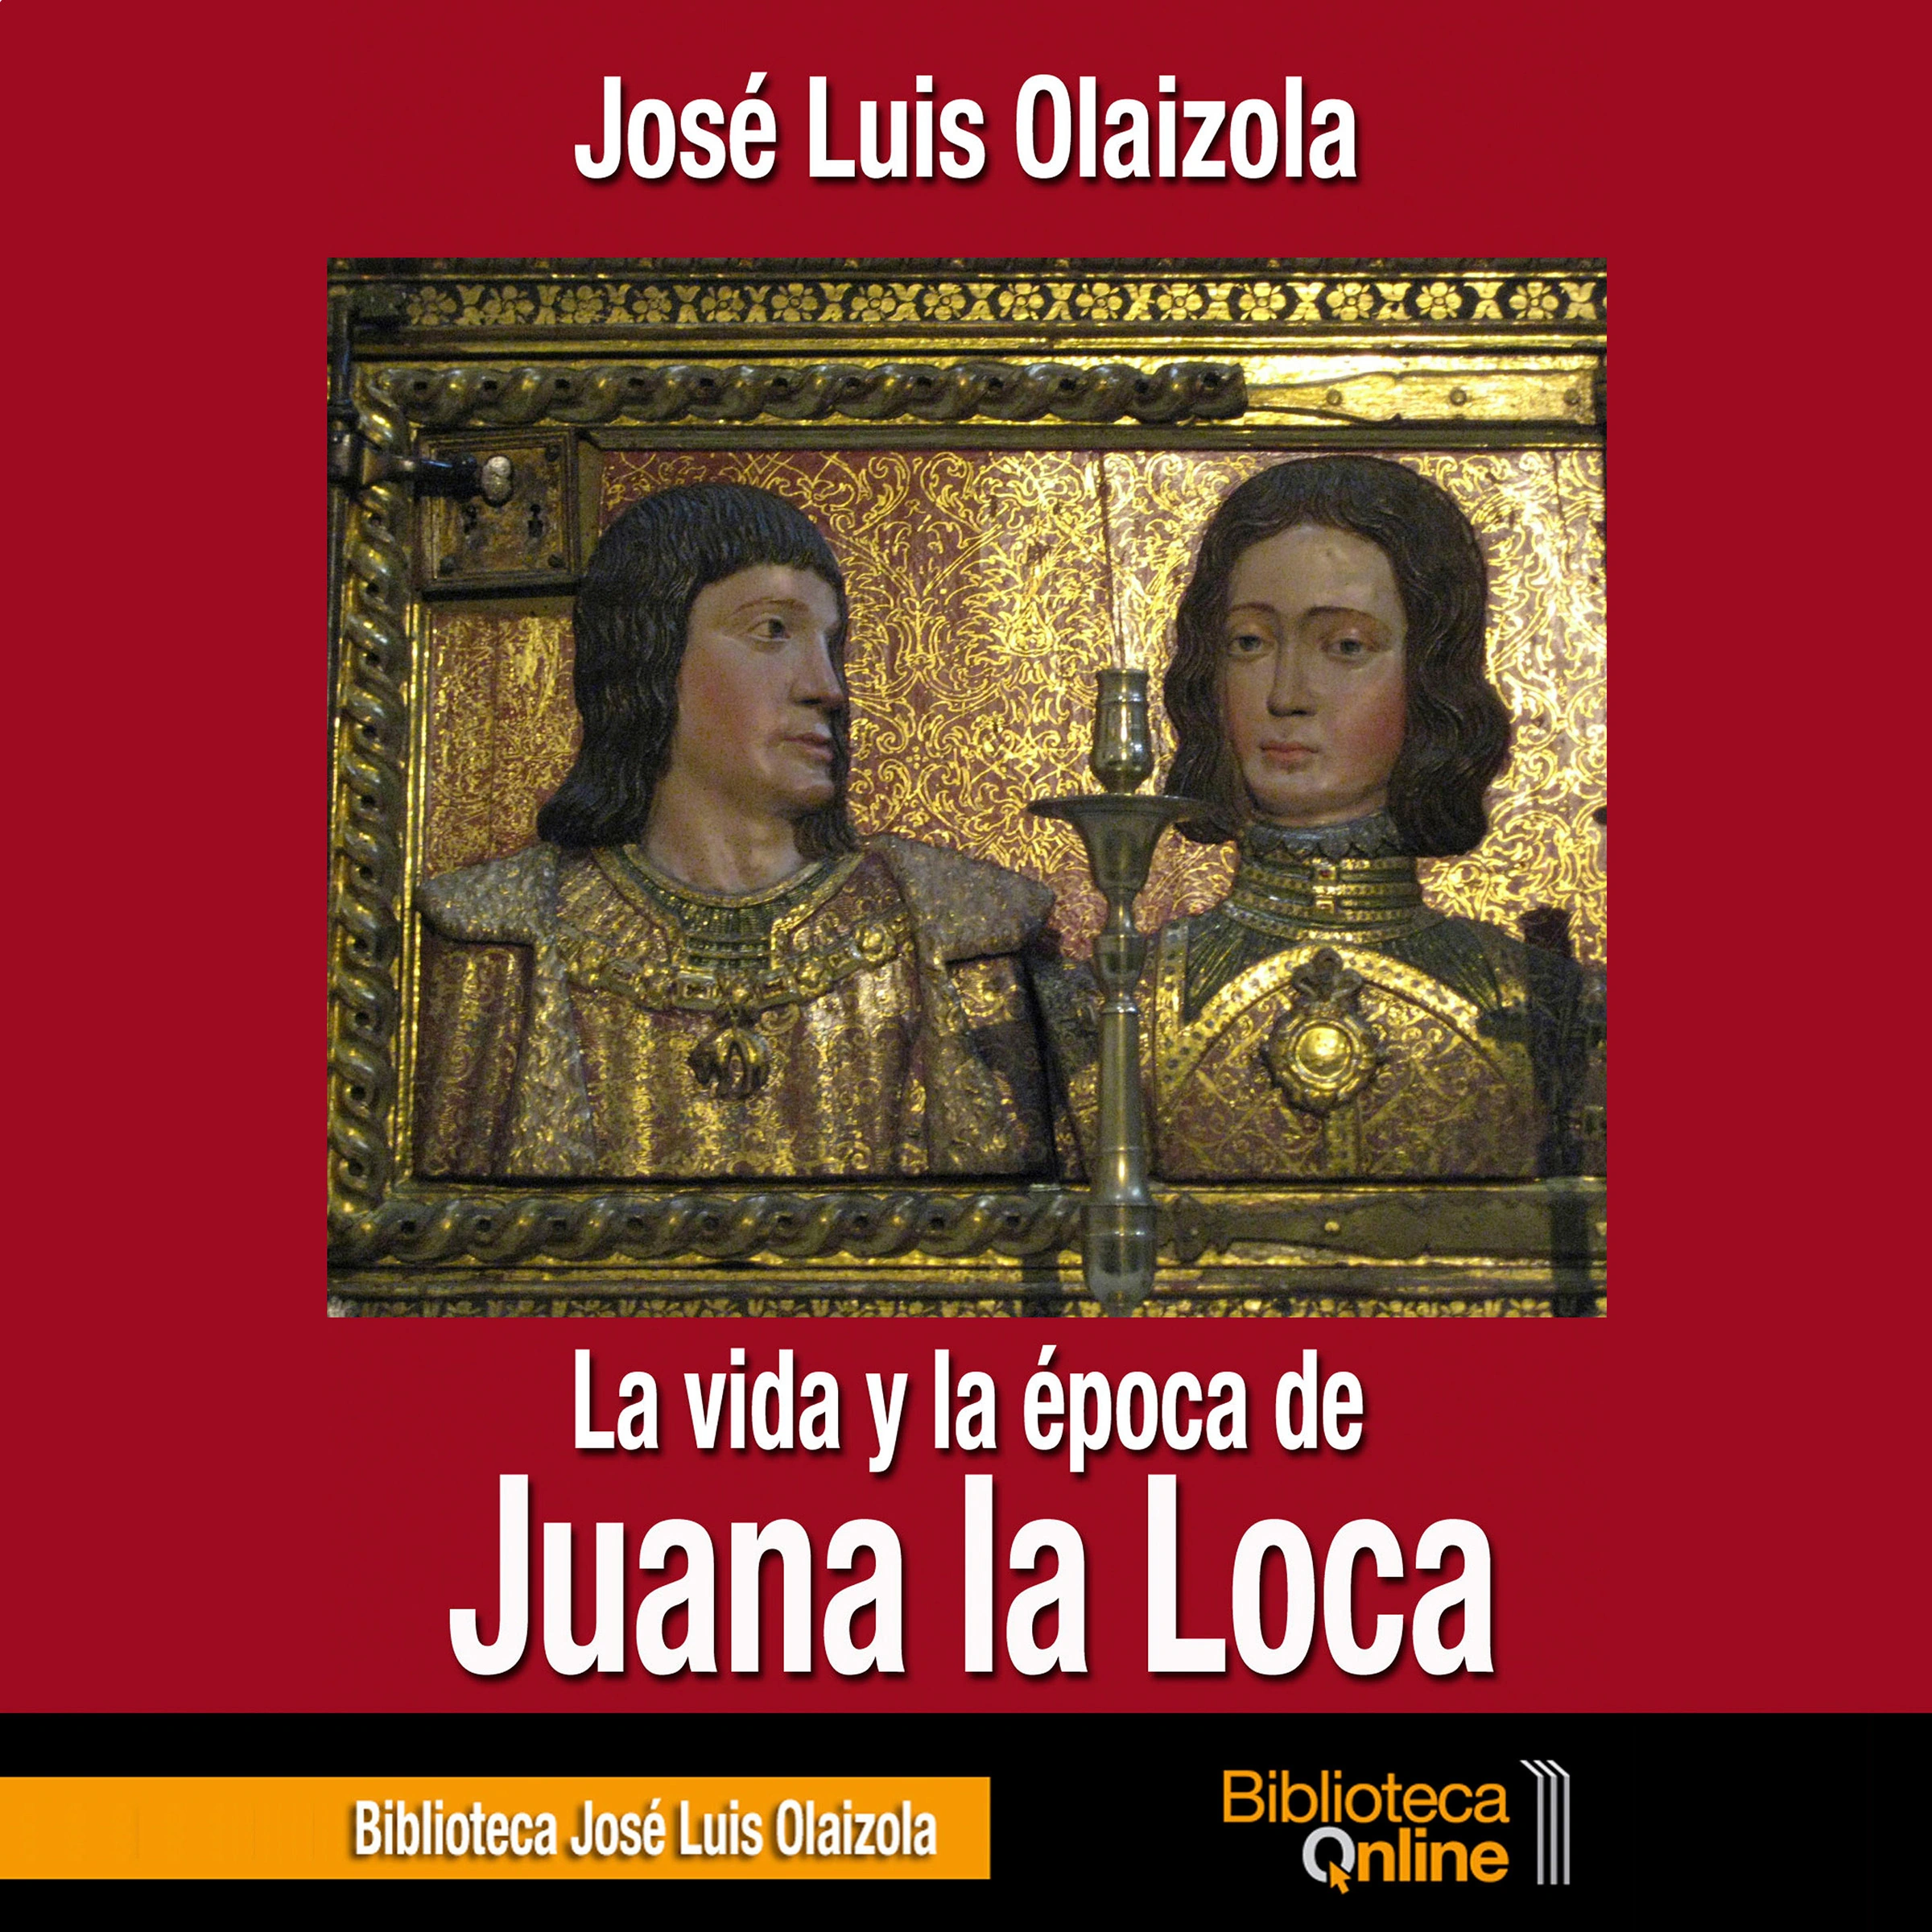 La vida y la época de Juana la Loca by José Luis Olaizola Audiobook